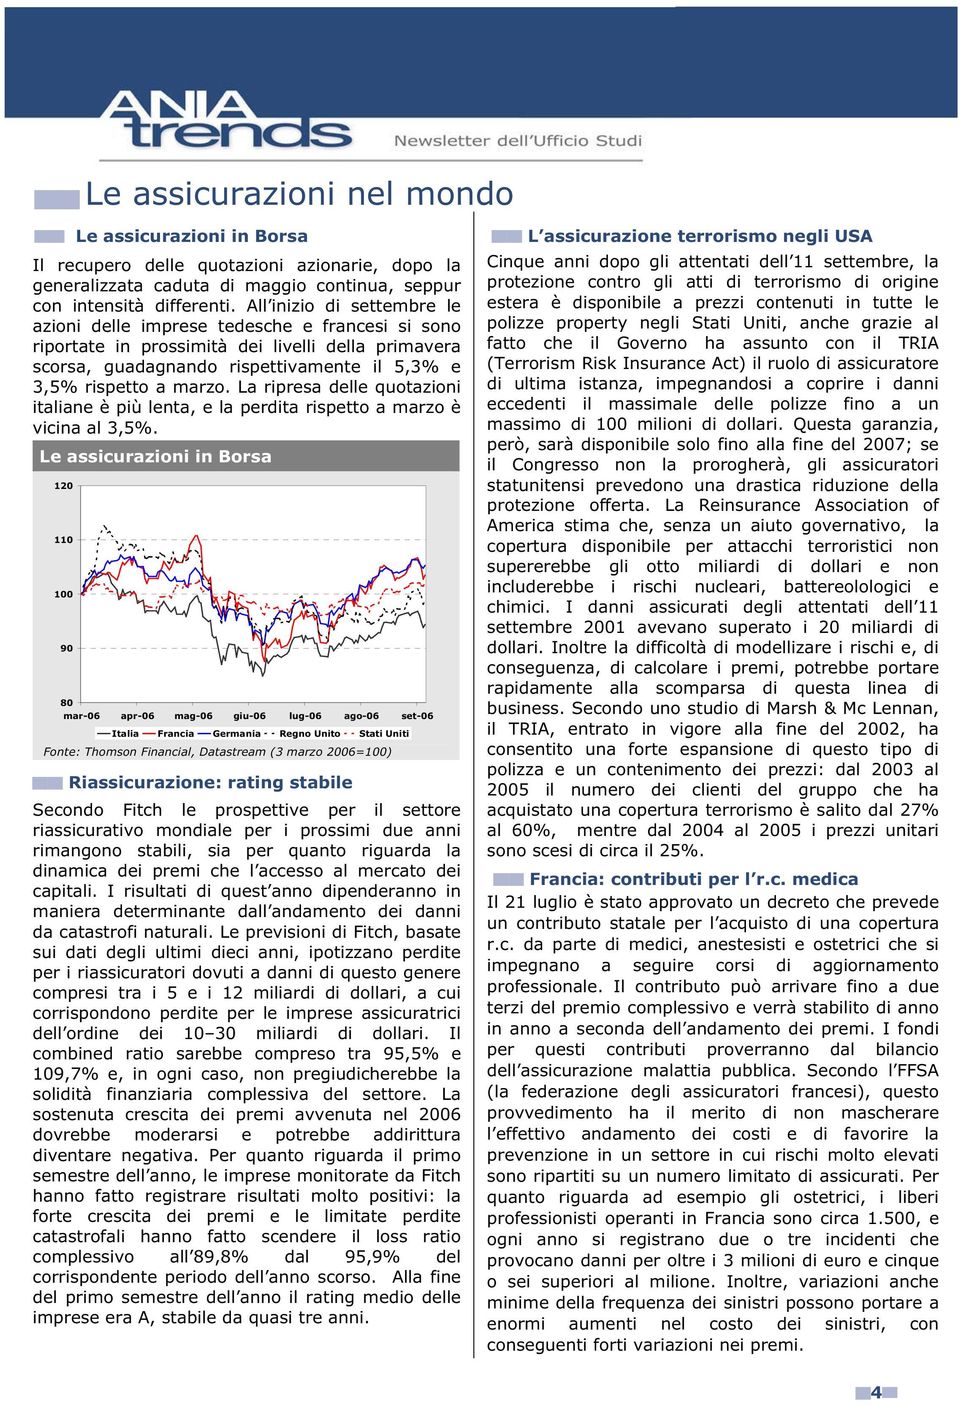 La ripresa delle quotazioni italiane è più lenta, e la perdita rispetto a marzo è vicina al 3,5%.